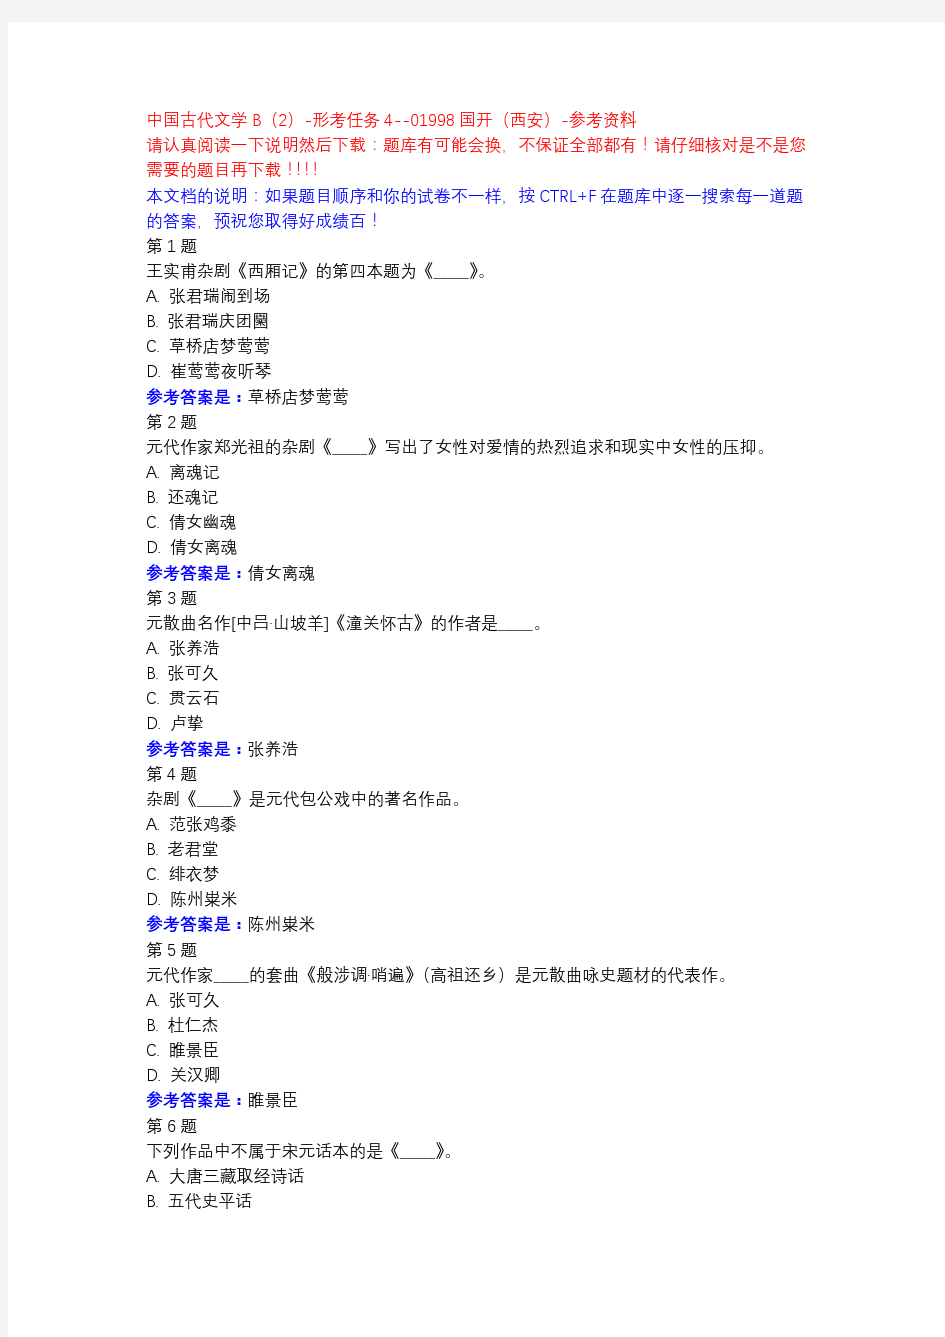 中国古代文学B(2)-形考任务4-国开(西安)-参考资料